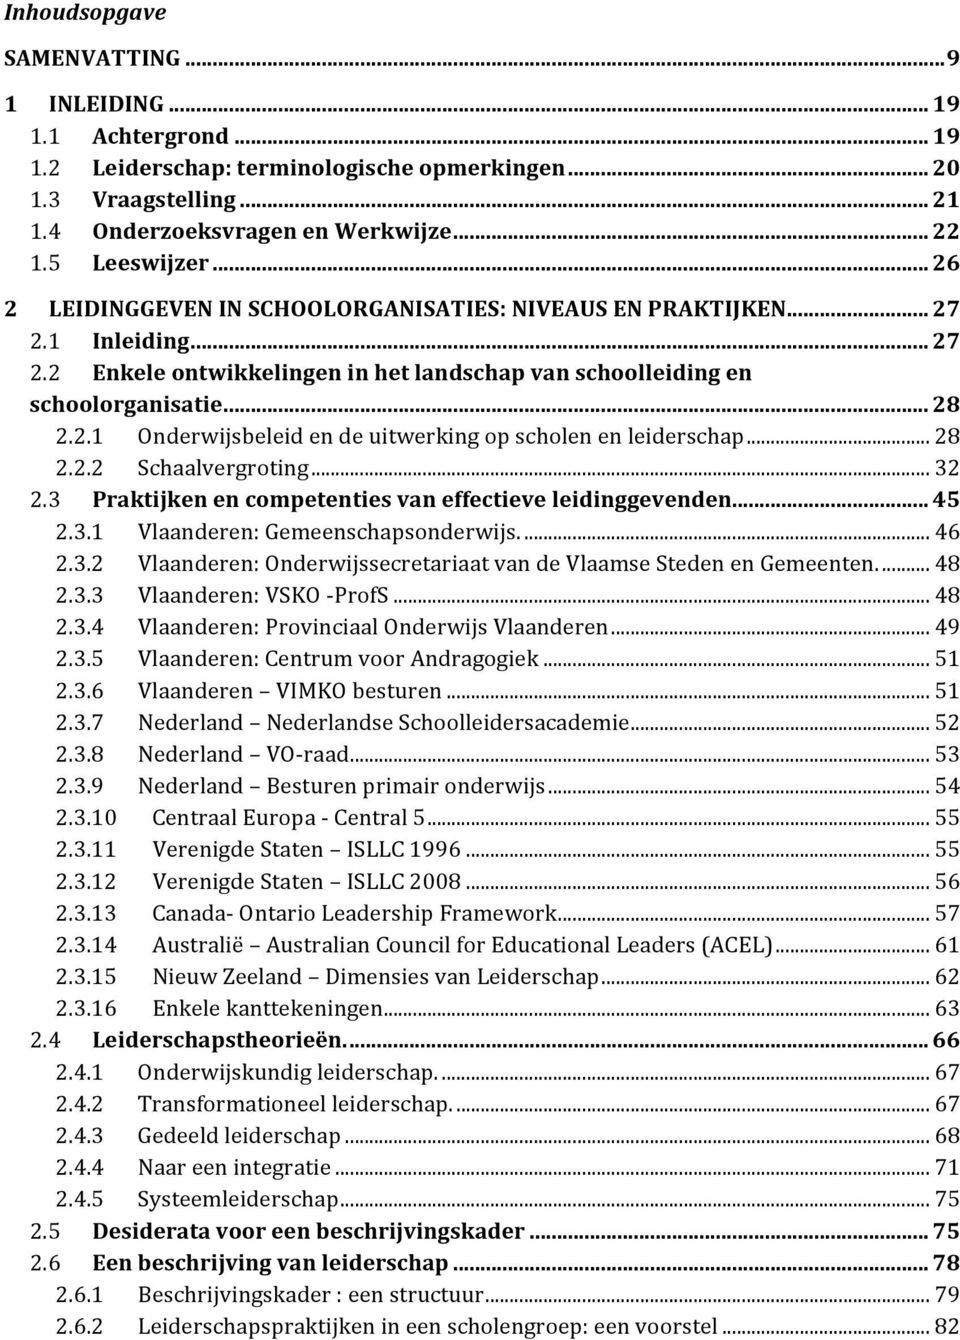 ..28 2.2.2 Schaalvergroting...32 2.3 Praktijkenencompetentiesvaneffectieveleidinggevenden...45 2.3.1 Vlaanderen:Gemeenschapsonderwijs...46 2.3.2 Vlaanderen:OnderwijssecretariaatvandeVlaamseStedenenGemeenten.